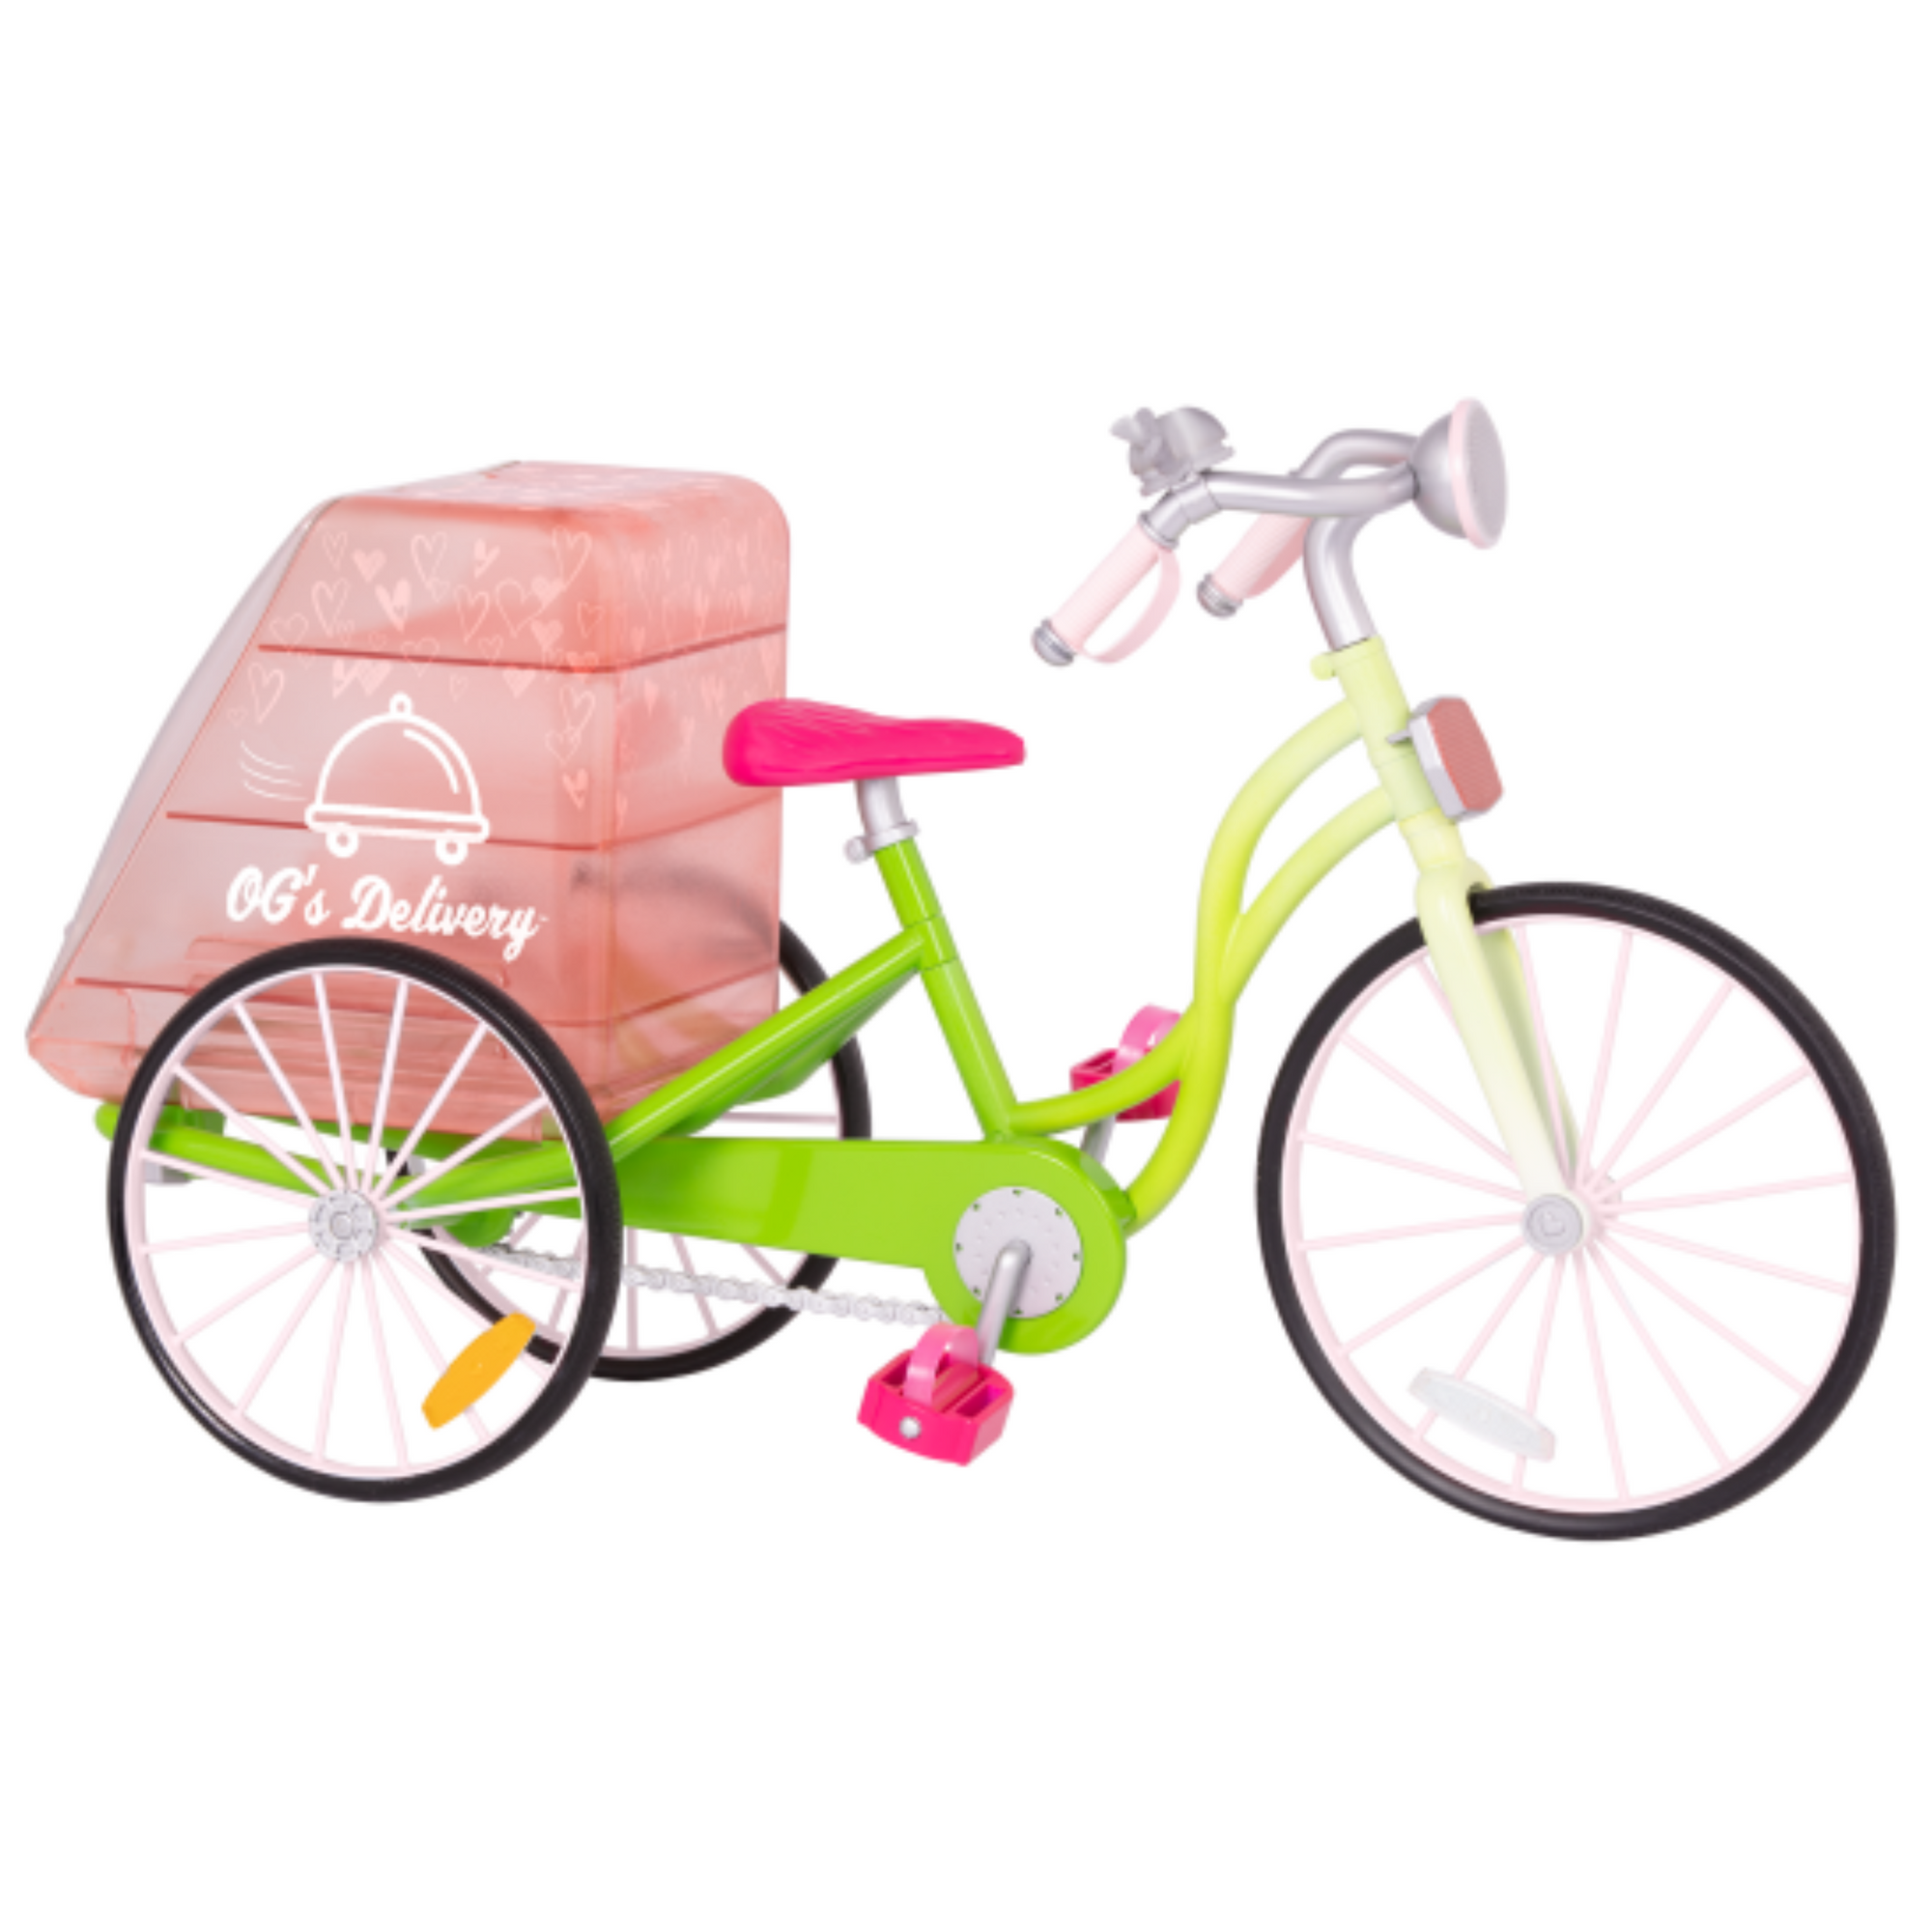 Bicicleta delivery de comida para muñeca